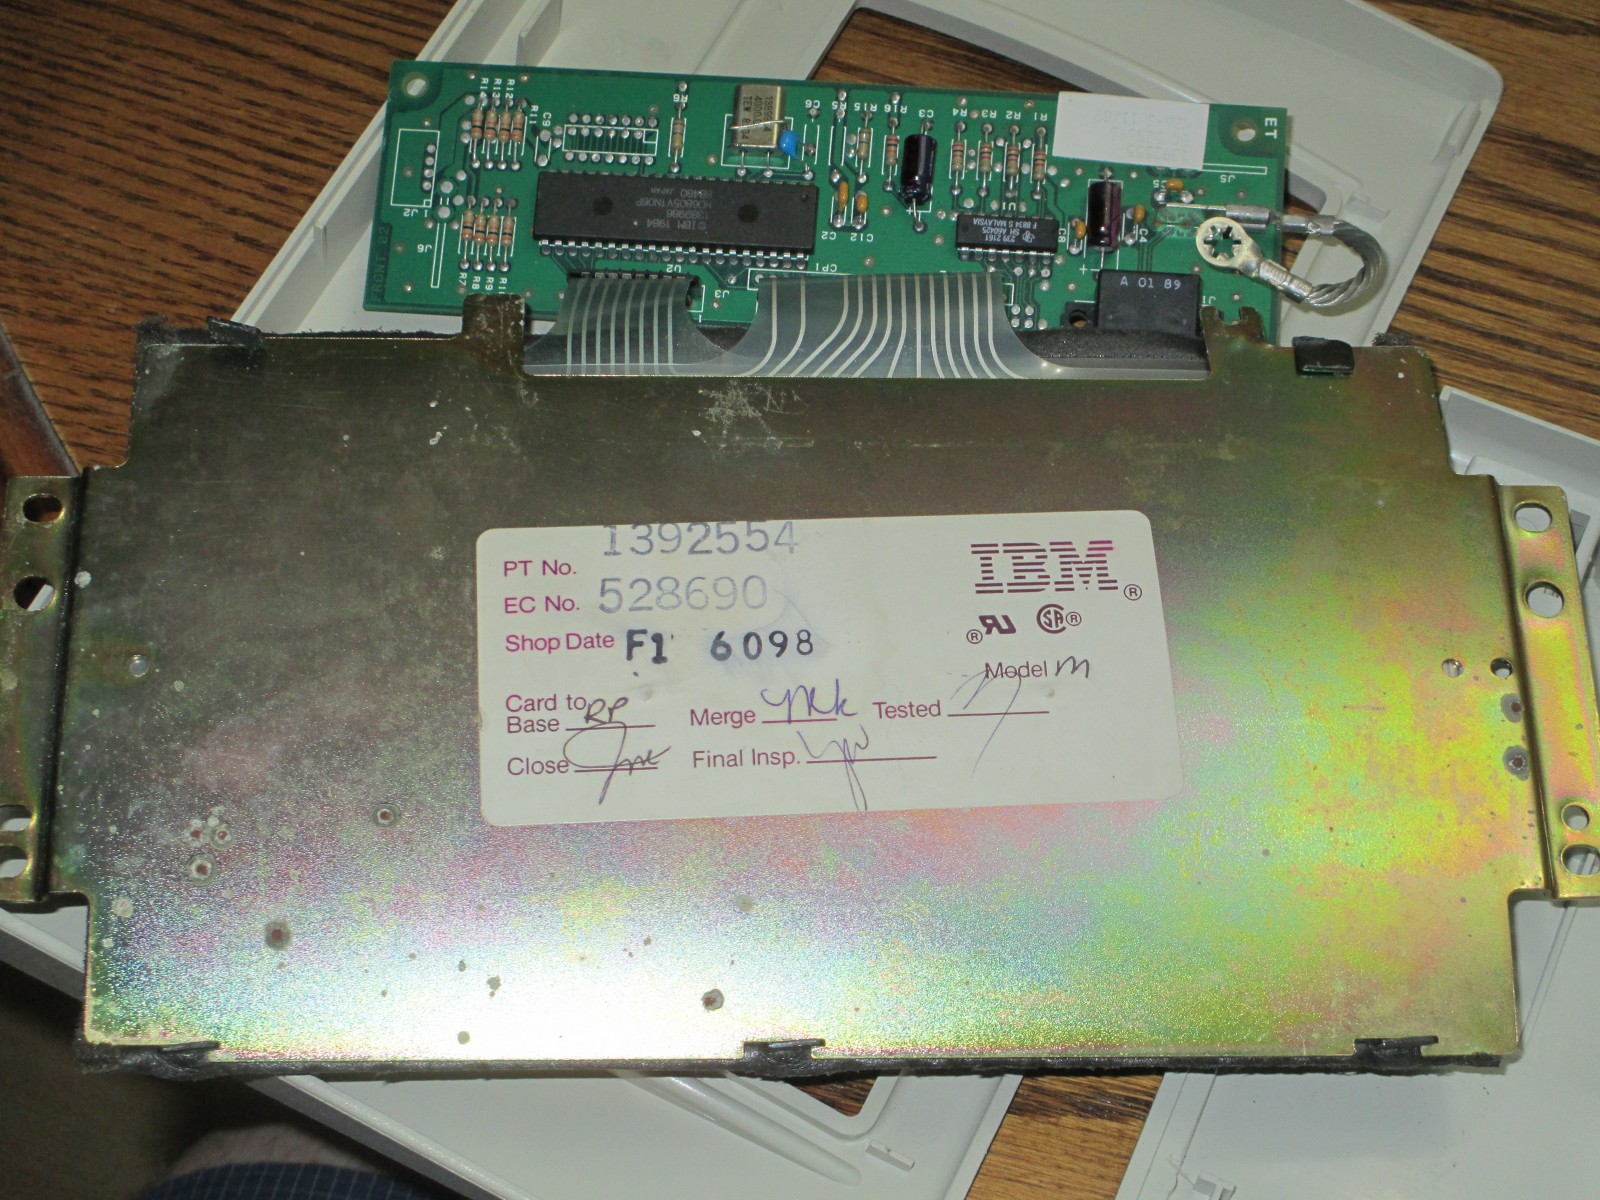 IBM Modem M 4704-Model-100-like, panel's backside. Oh, moderately shiny!